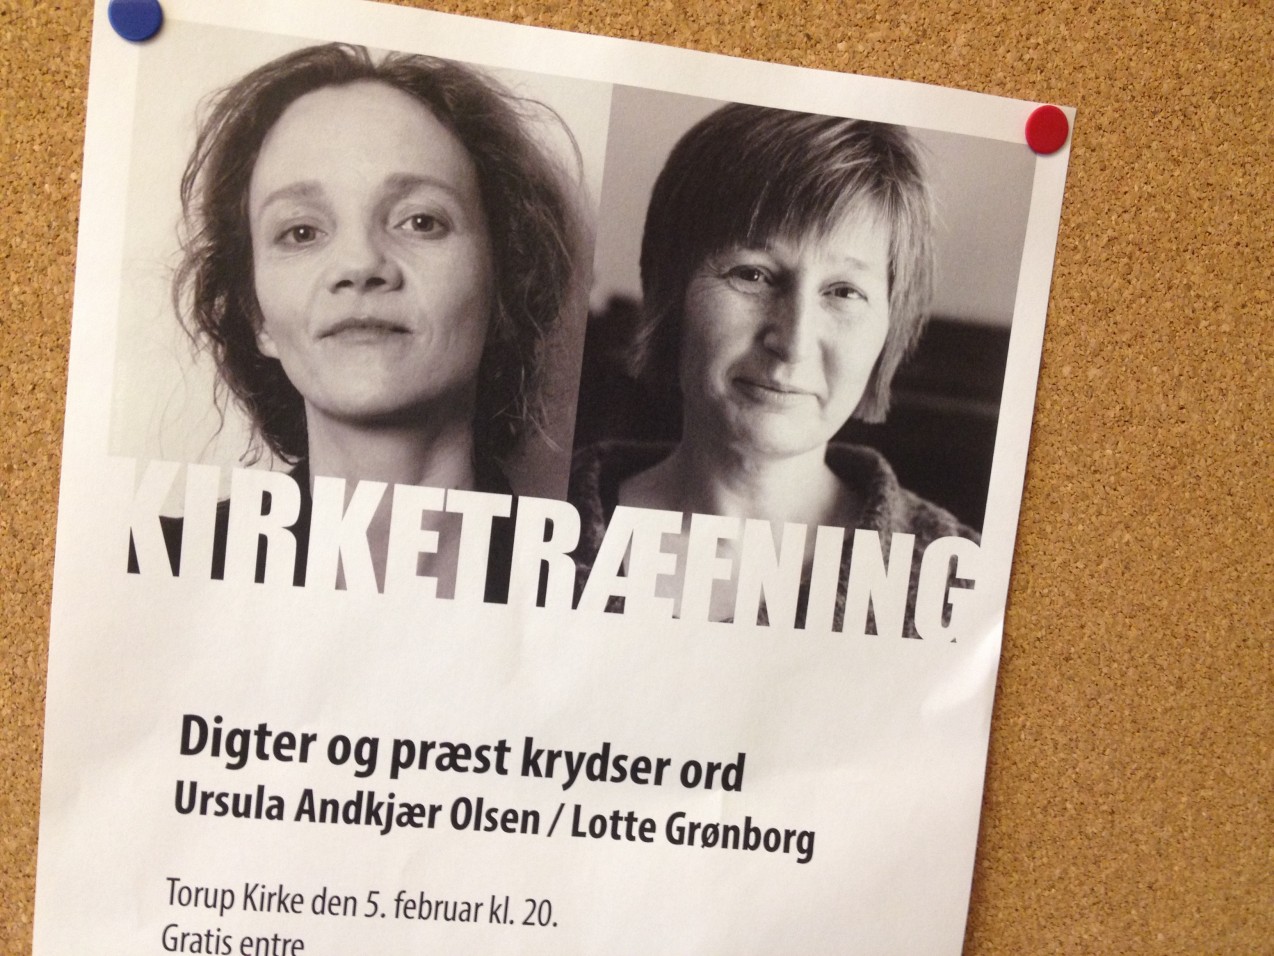 Plakat af arrangement i Torup Kirke - forfattertræfning - Ursula Andkjær Olsen og Lotte Grønborg